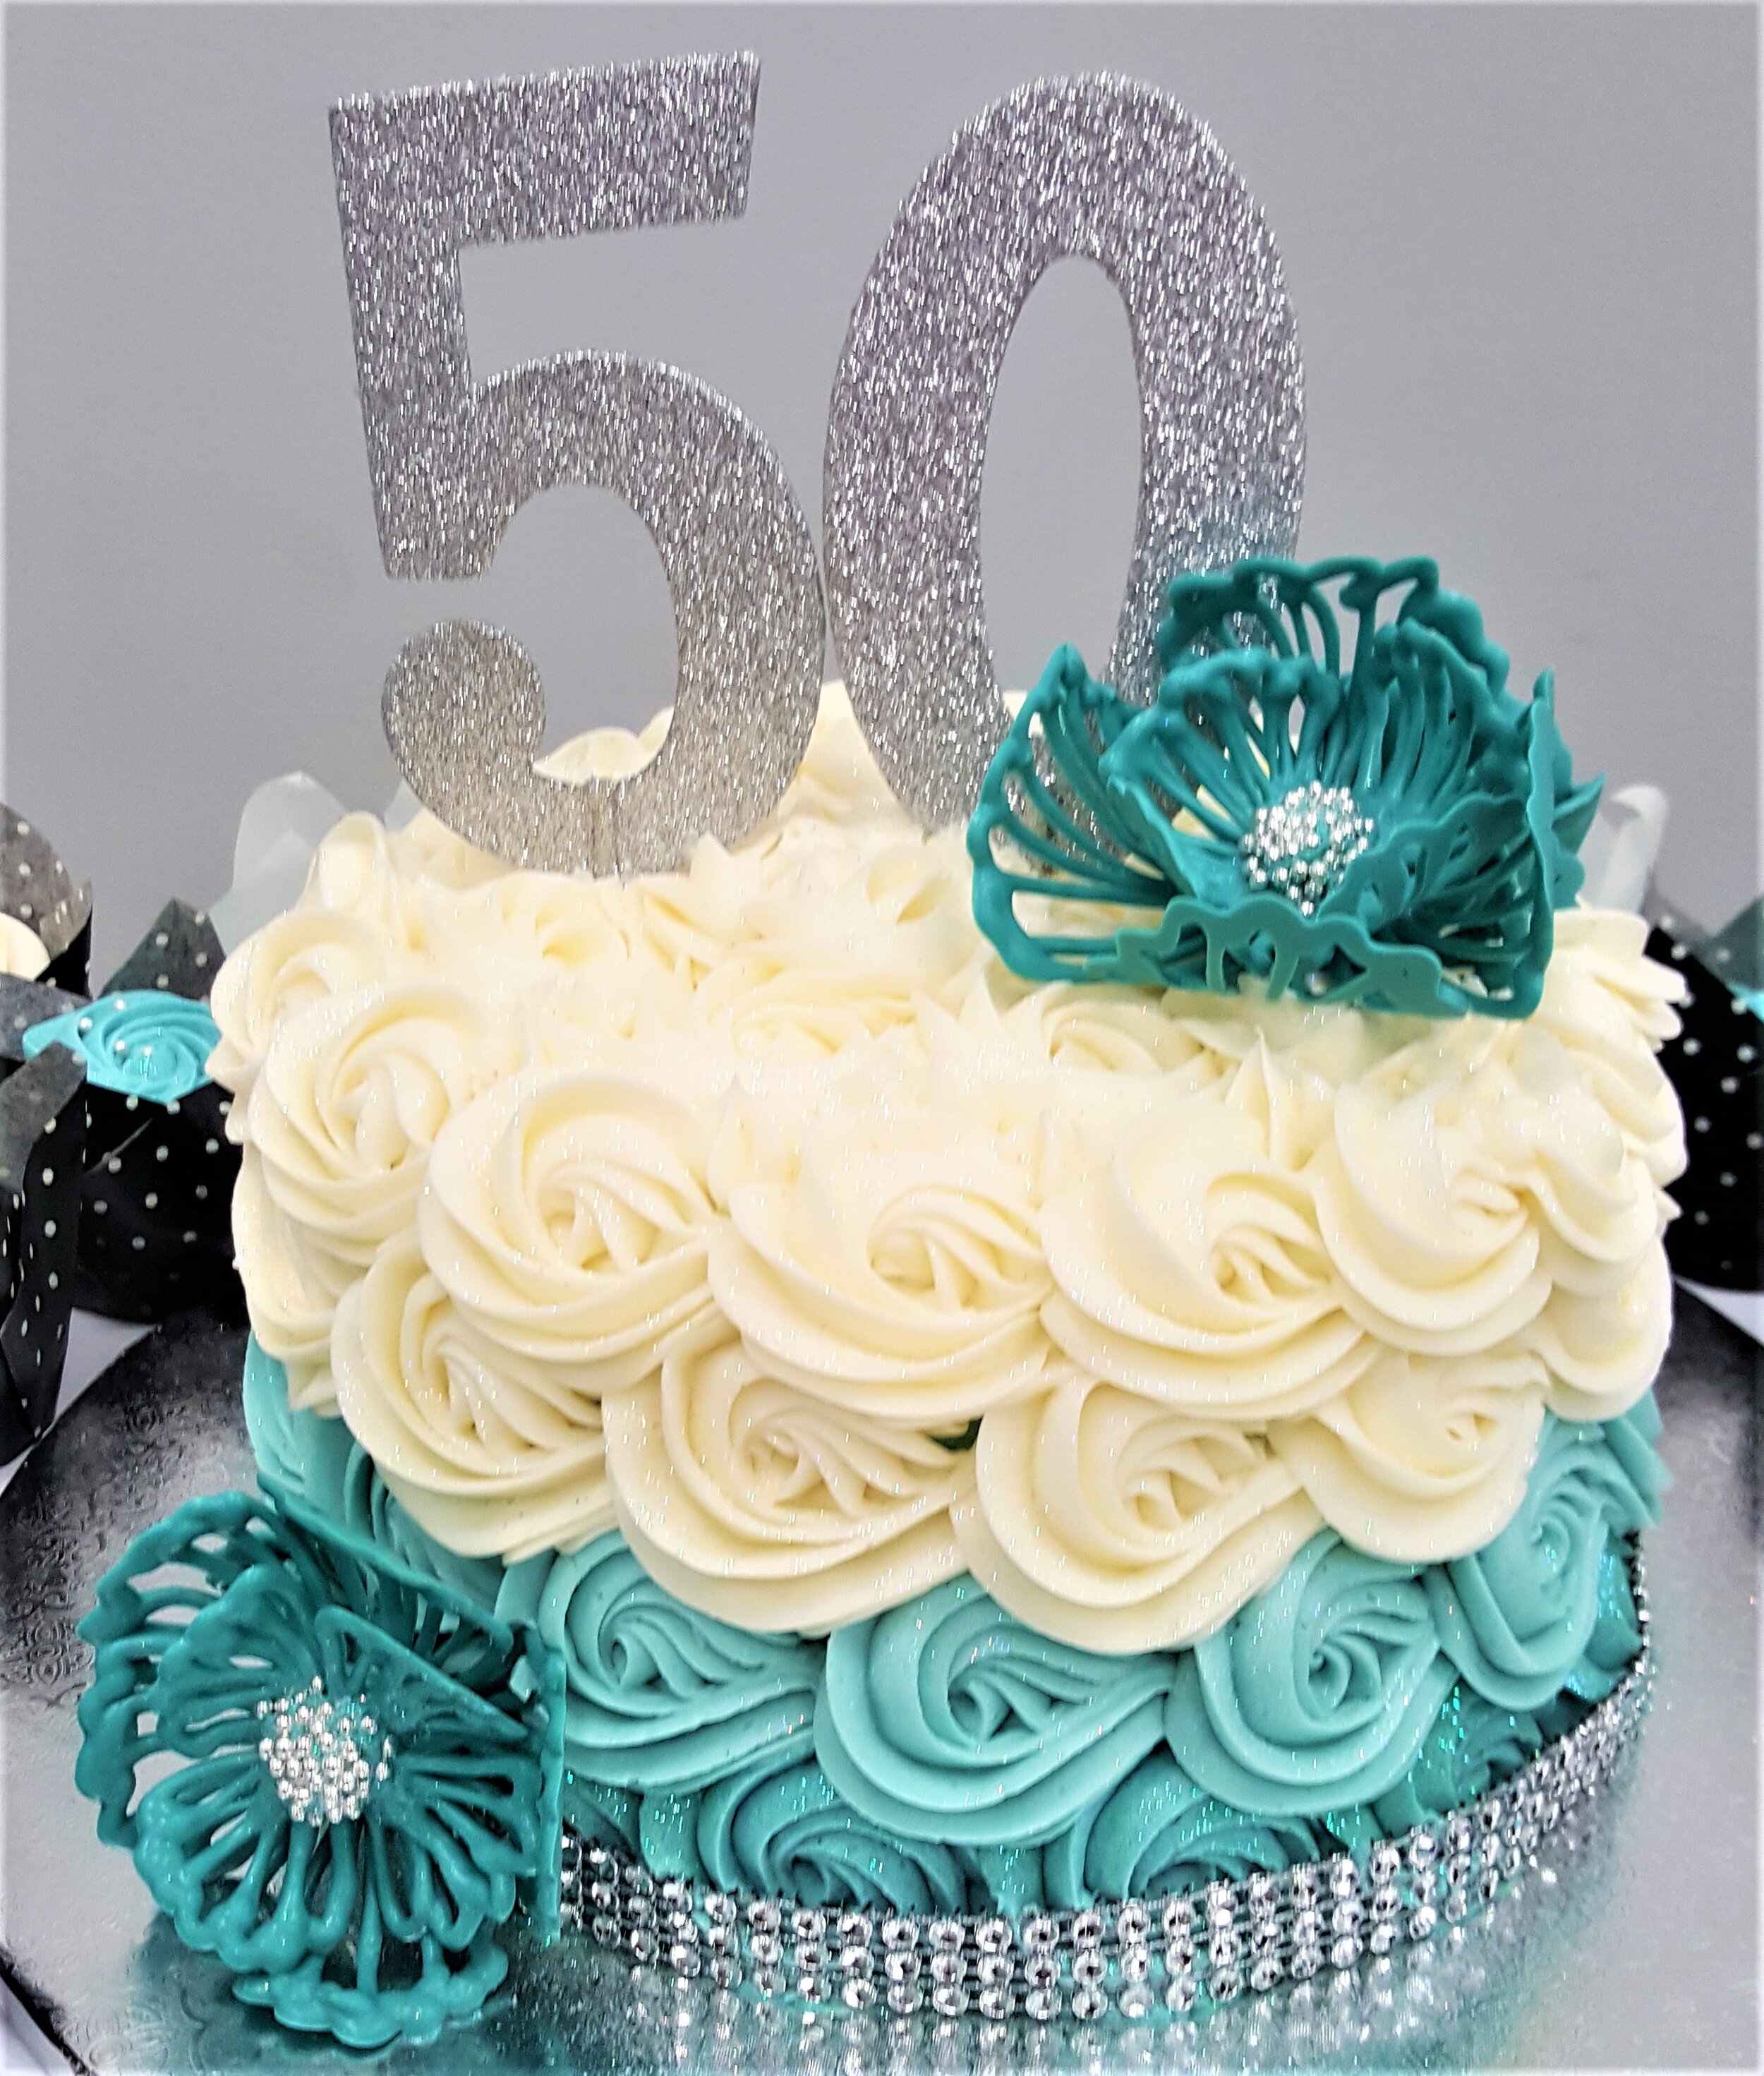 Chicago_Bakery-Anniversary-Cake.jpg